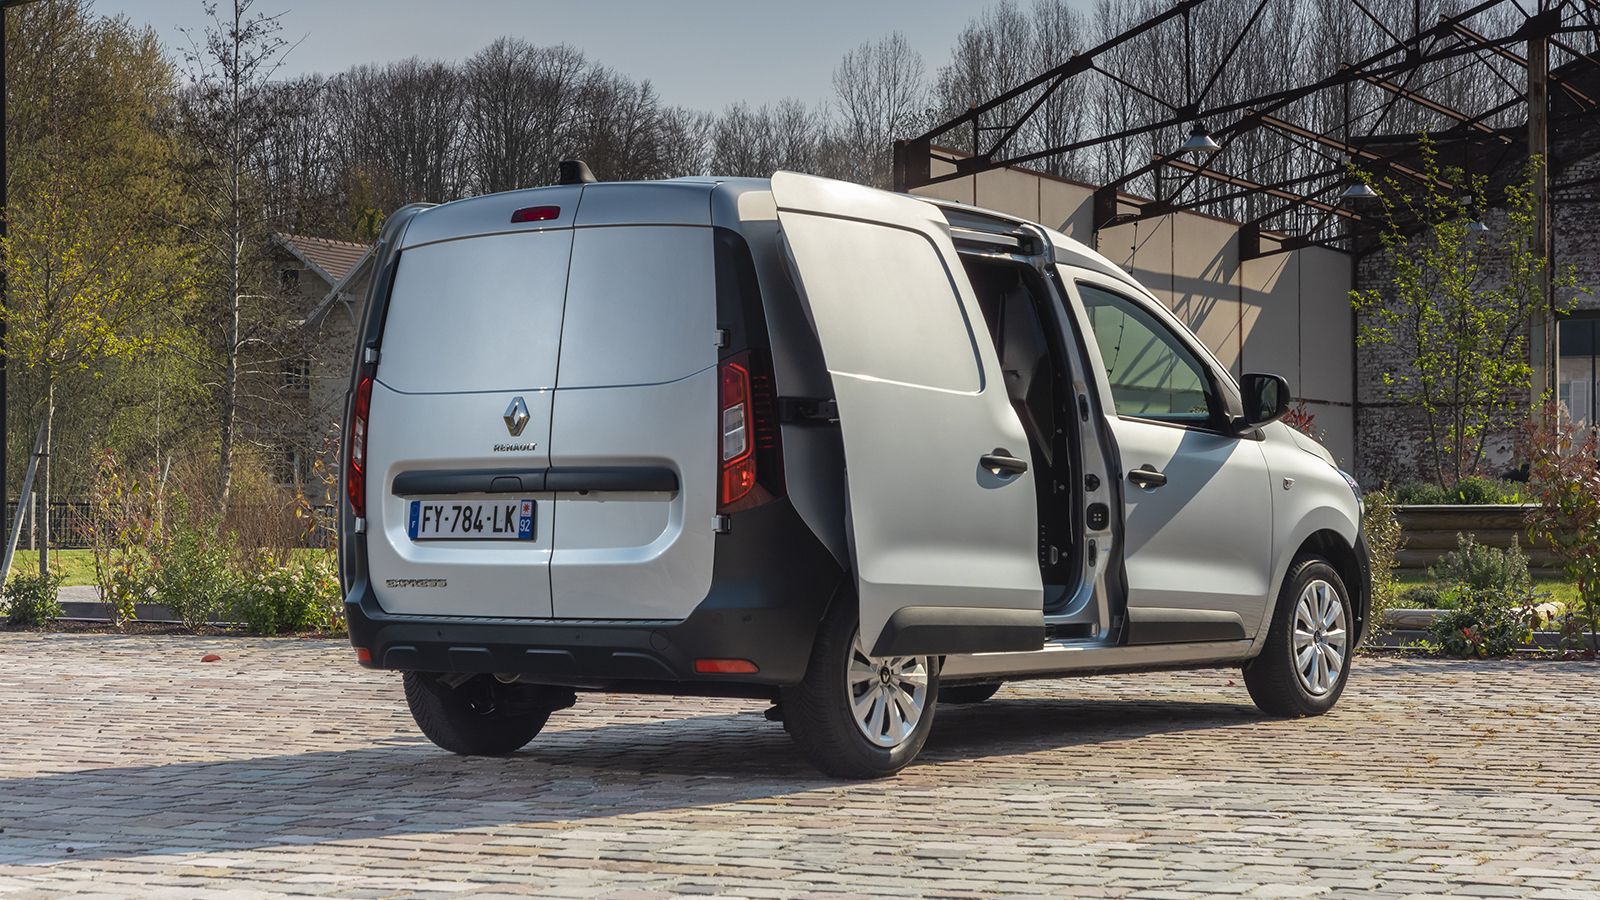 Το μέγιστο ωφέλιμο φορτίο του νέου Renault Express είναι της τάξης των 685 κιλών.